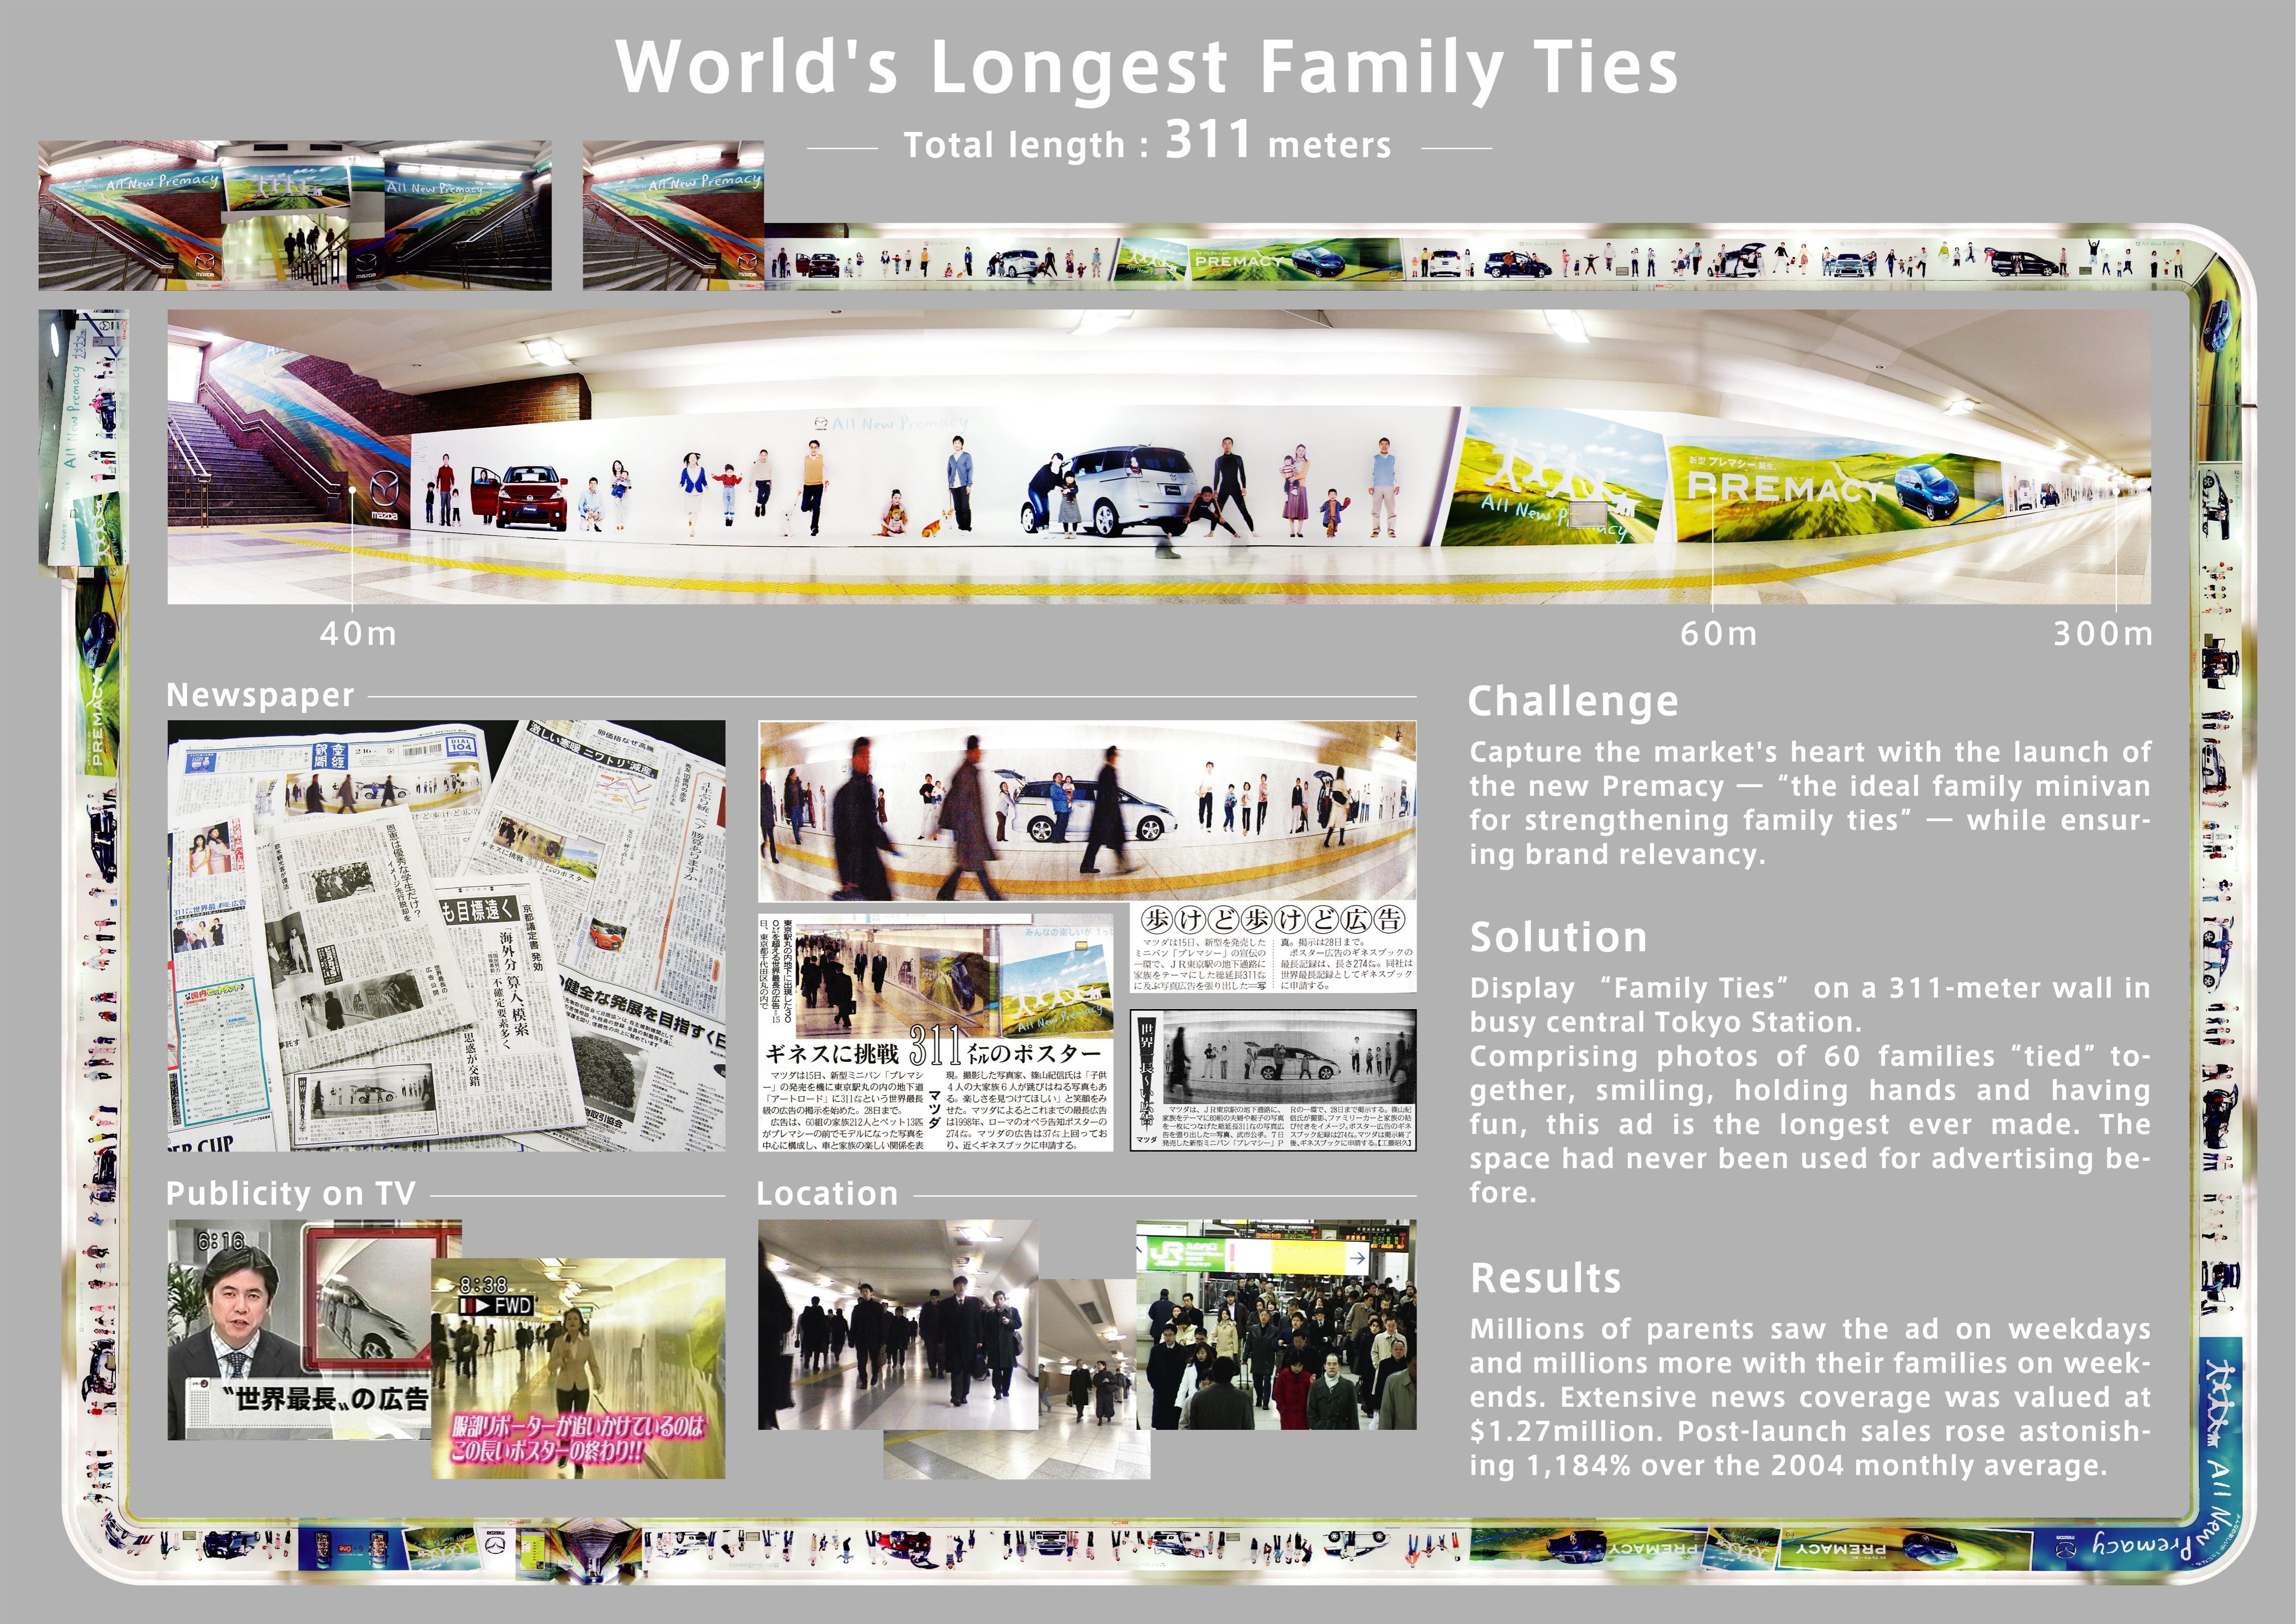 WORLD'S LONGEST FAMILY TIES